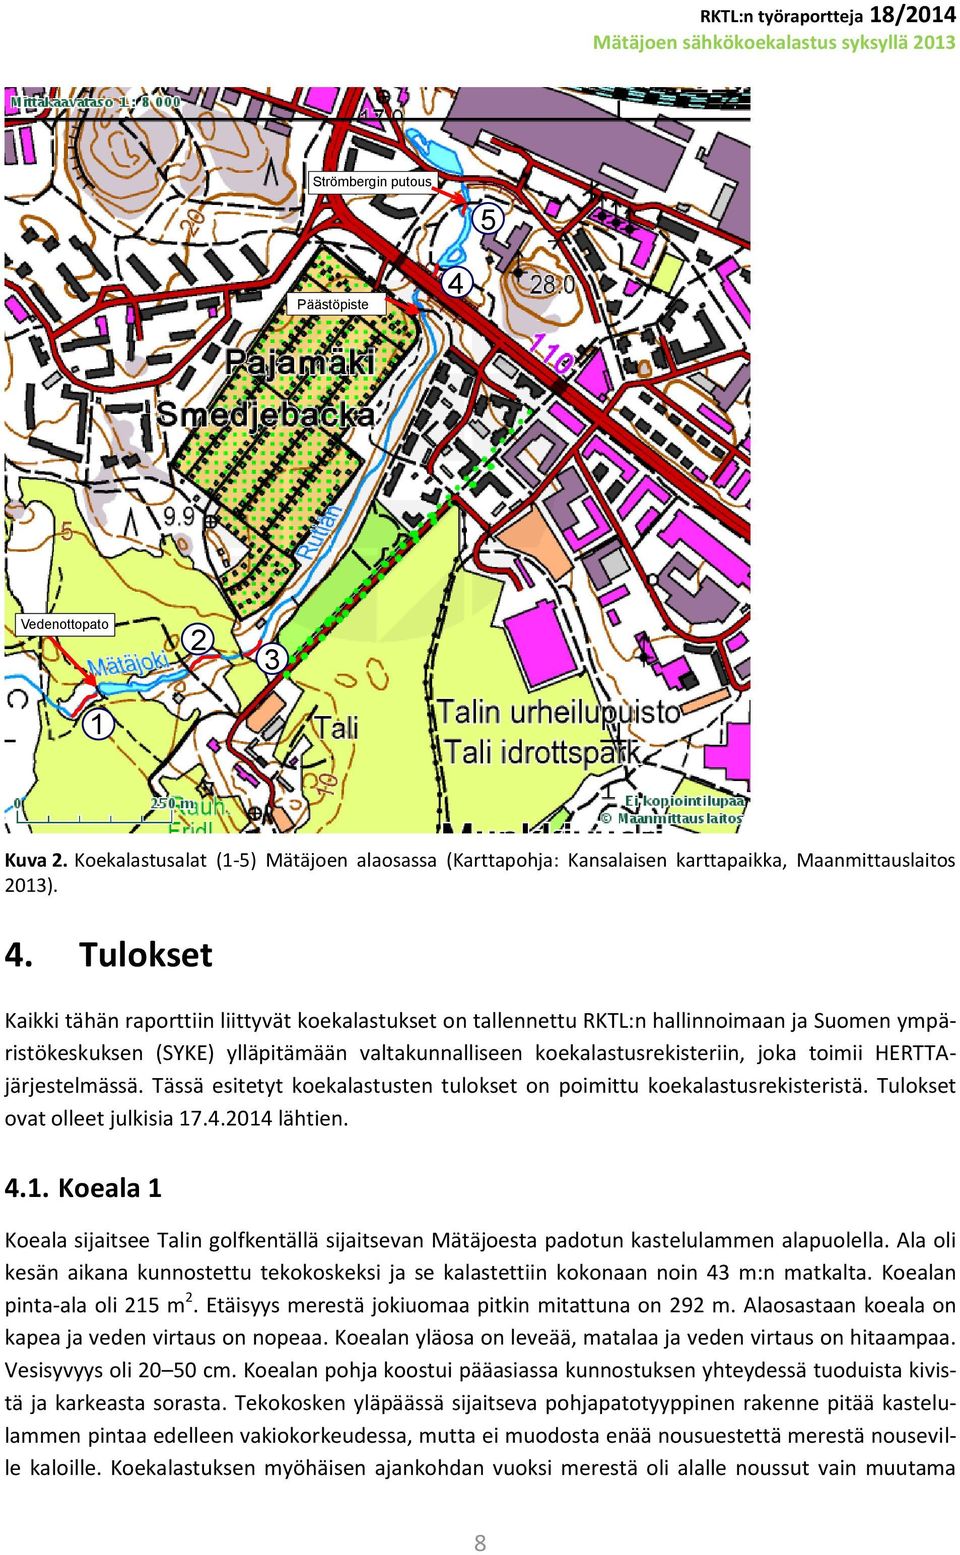 Tulokset Kaikki tähän raporttiin liittyvät koekalastukset on tallennettu RKTL:n hallinnoimaan ja Suomen ympäristökeskuksen (SYKE) ylläpitämään valtakunnalliseen koekalastusrekisteriin, joka toimii